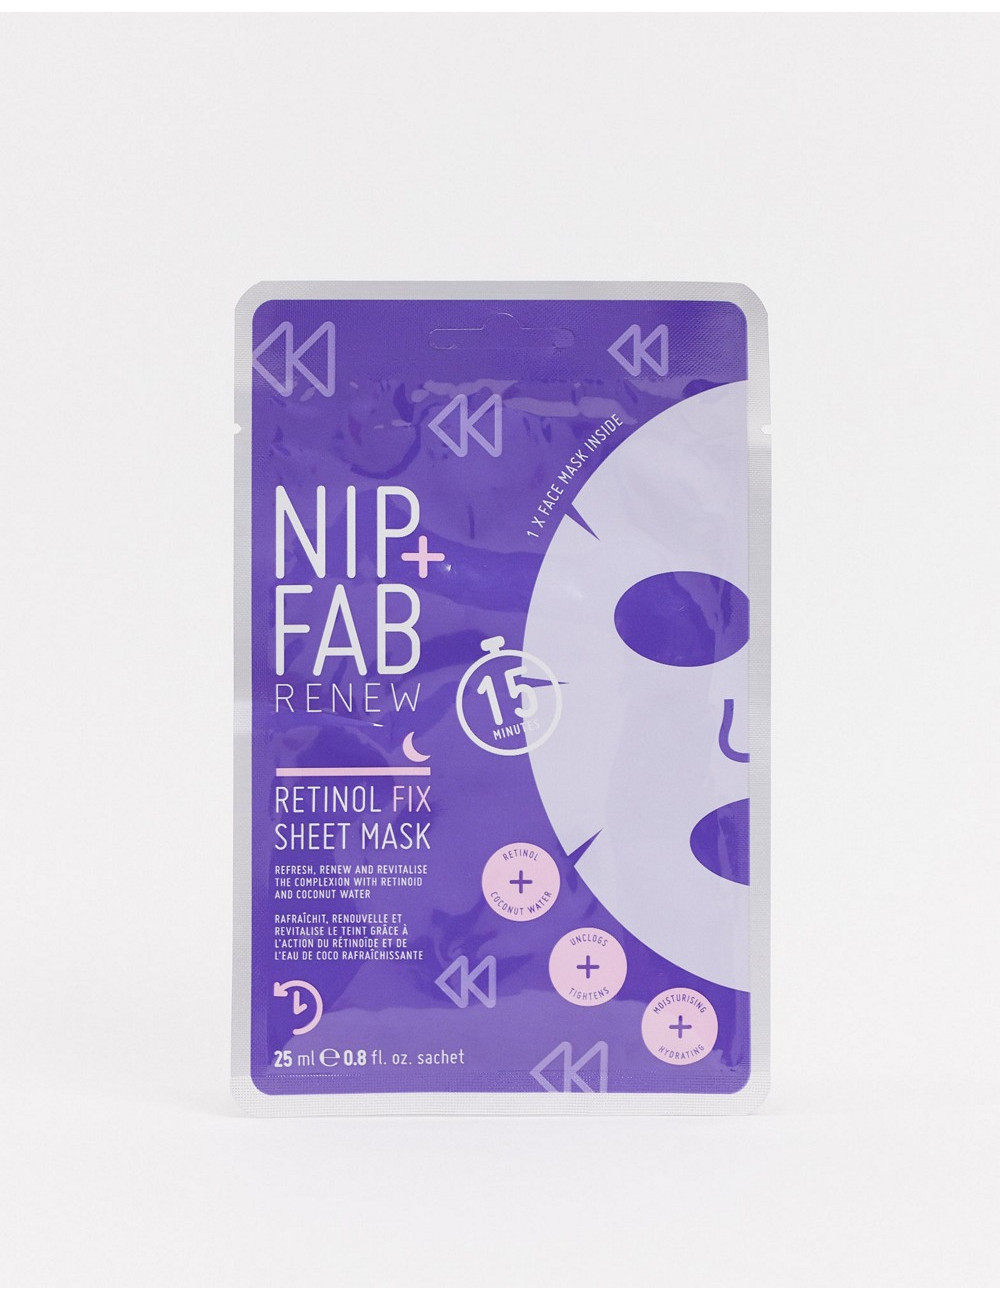 NIP+FAB Retinol Fix Sheet Mask